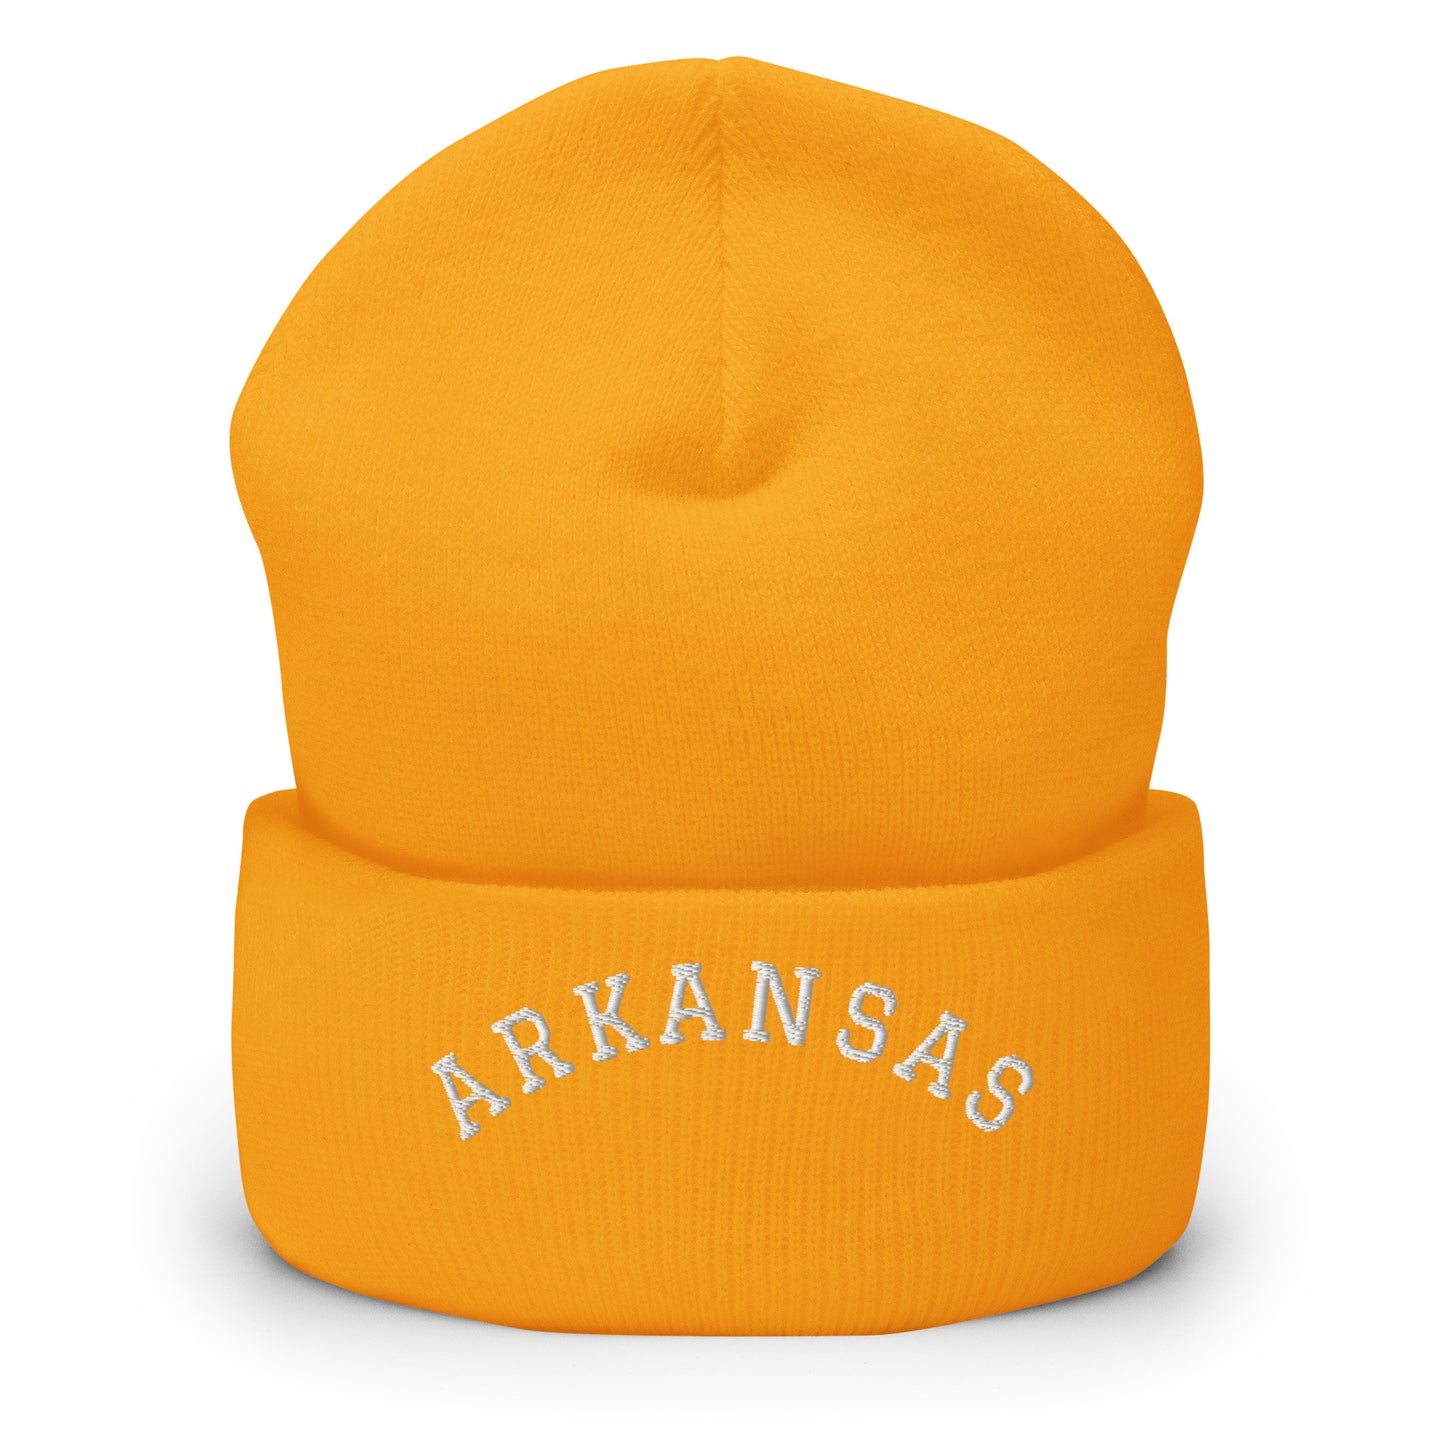 Arkansas Arch Cuffed Beanie Hat